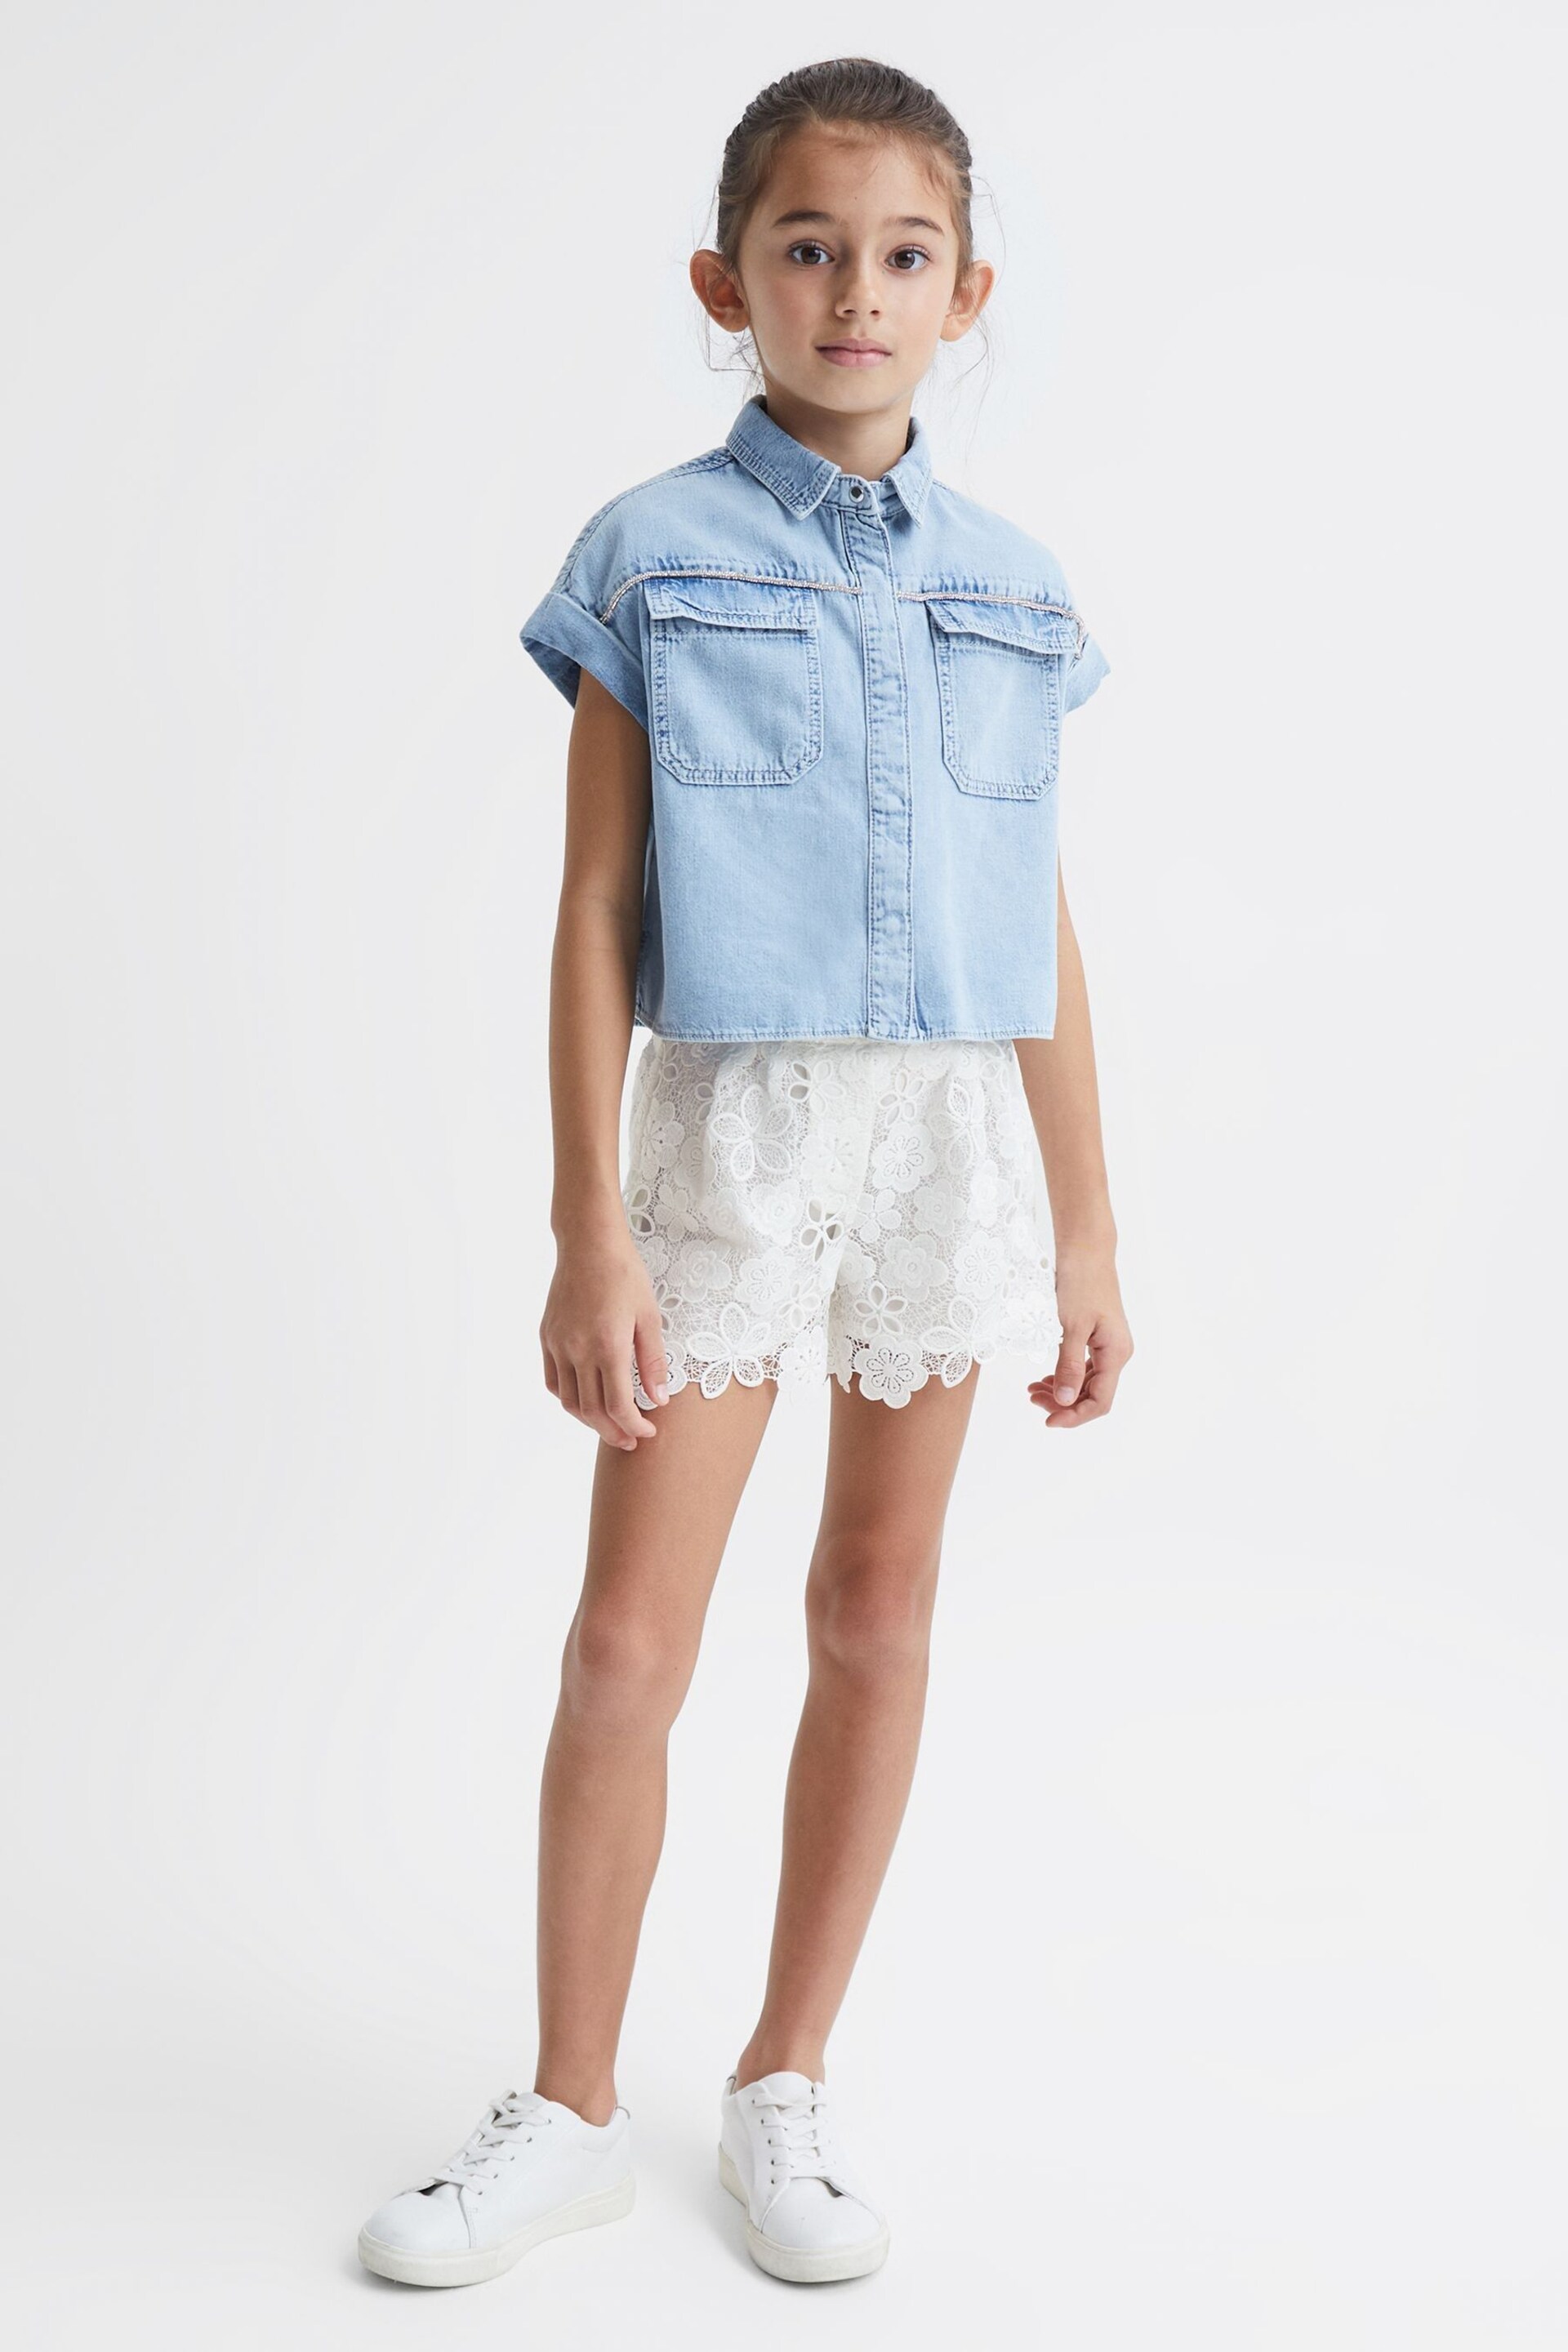 Reiss Ivory Skylar Junior Lace Shorts - Image 3 of 6